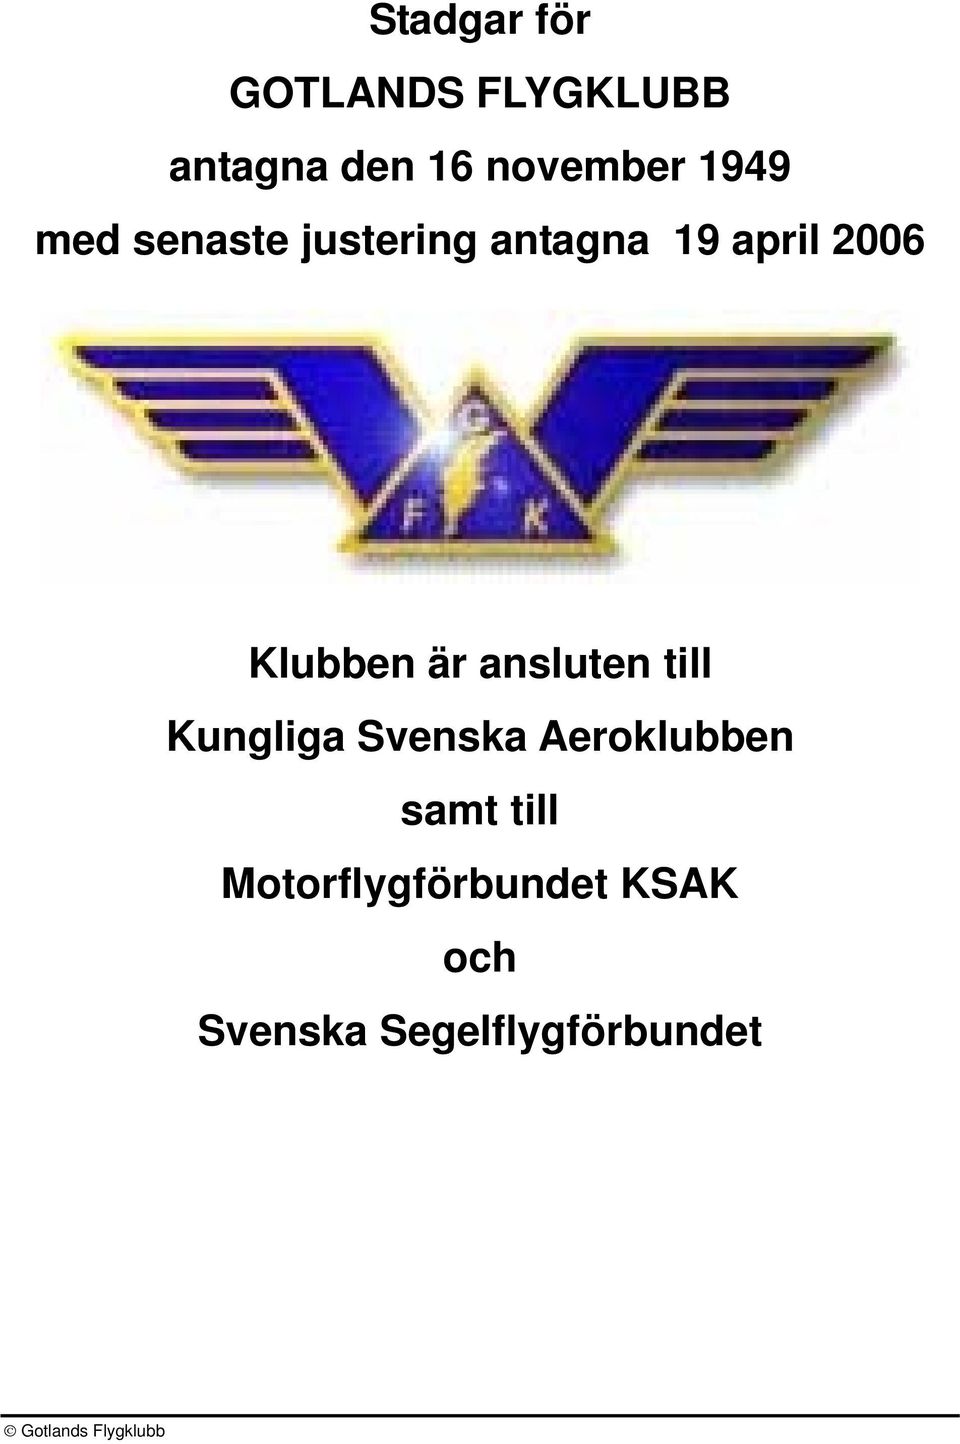 Klubben är ansluten till Kungliga Svenska Aeroklubben